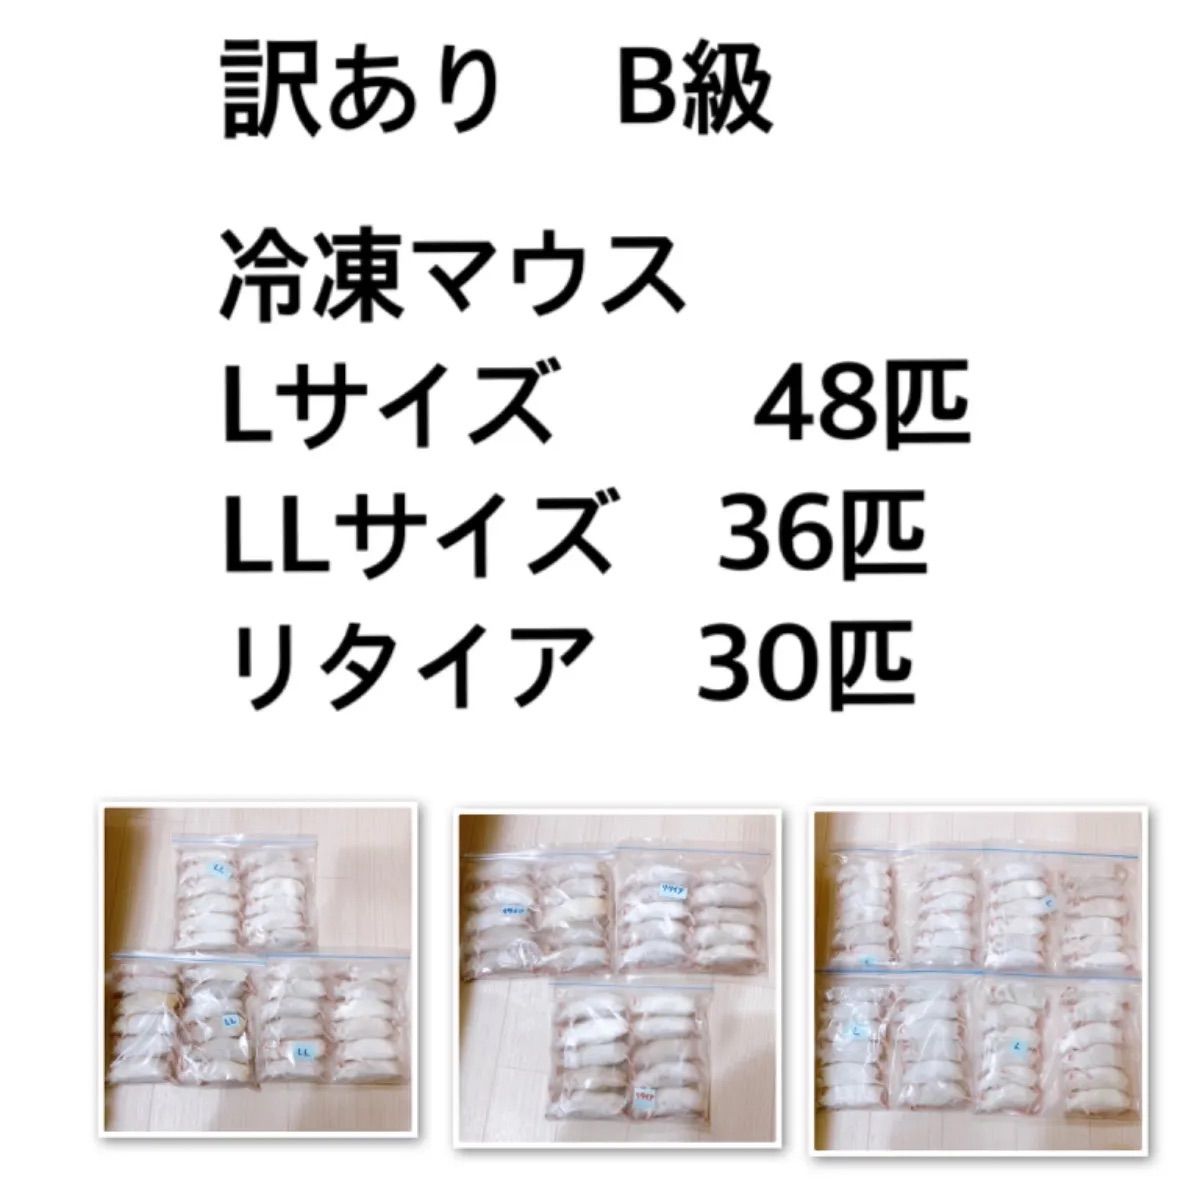 【お買得品】冷凍マウス48匹(リタイア) 爬虫類/両生類用品